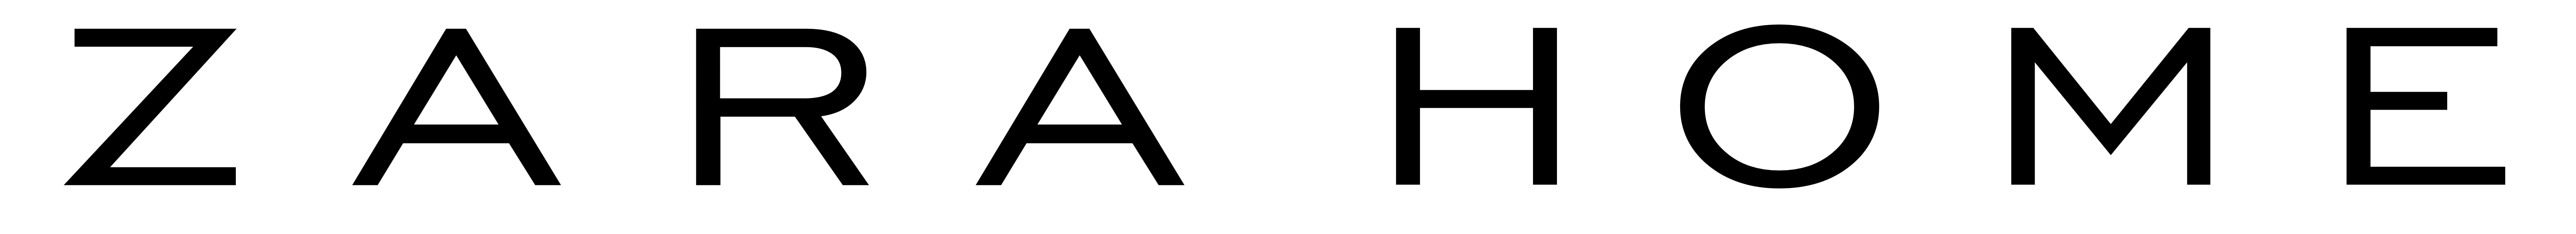 زارا logo صورة شفافة